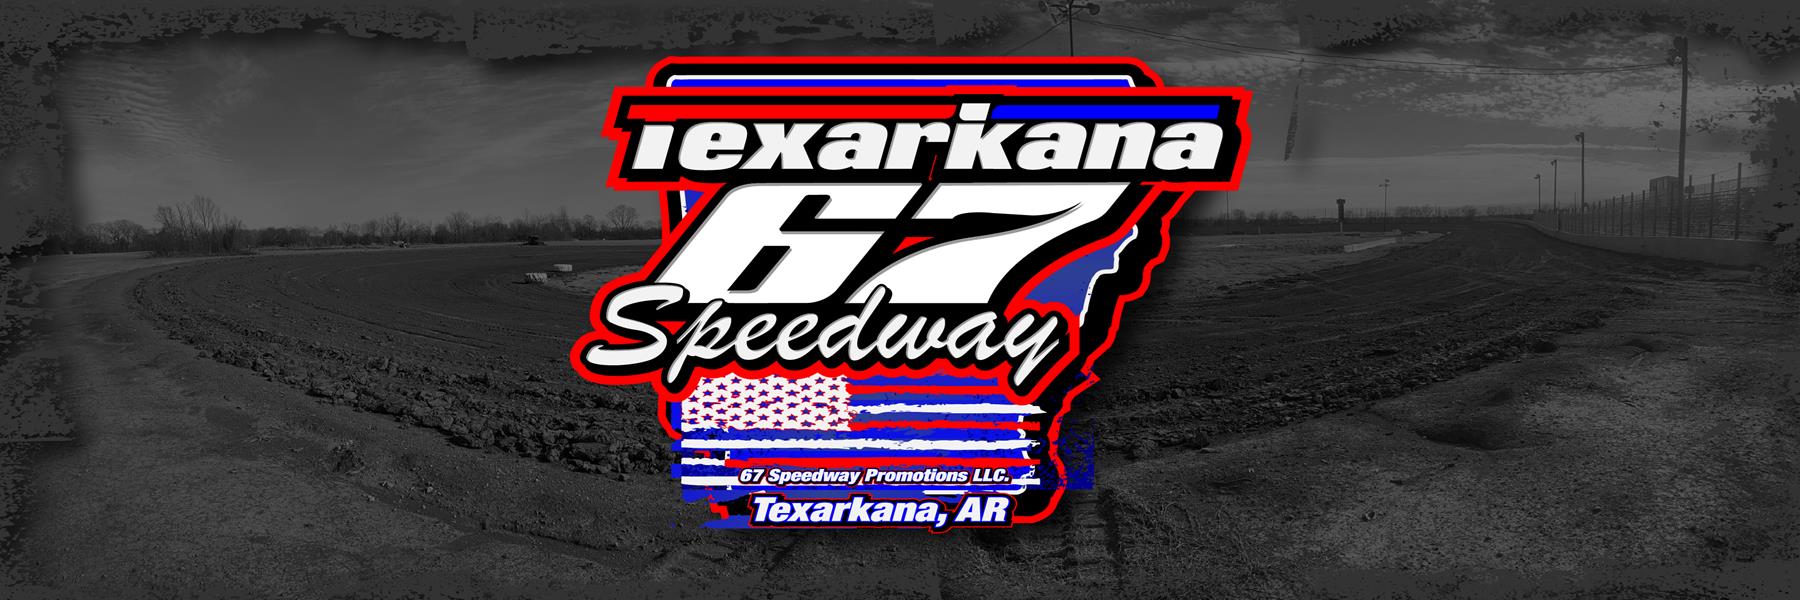 4/12/2019 - Texarkana 67 Speedway